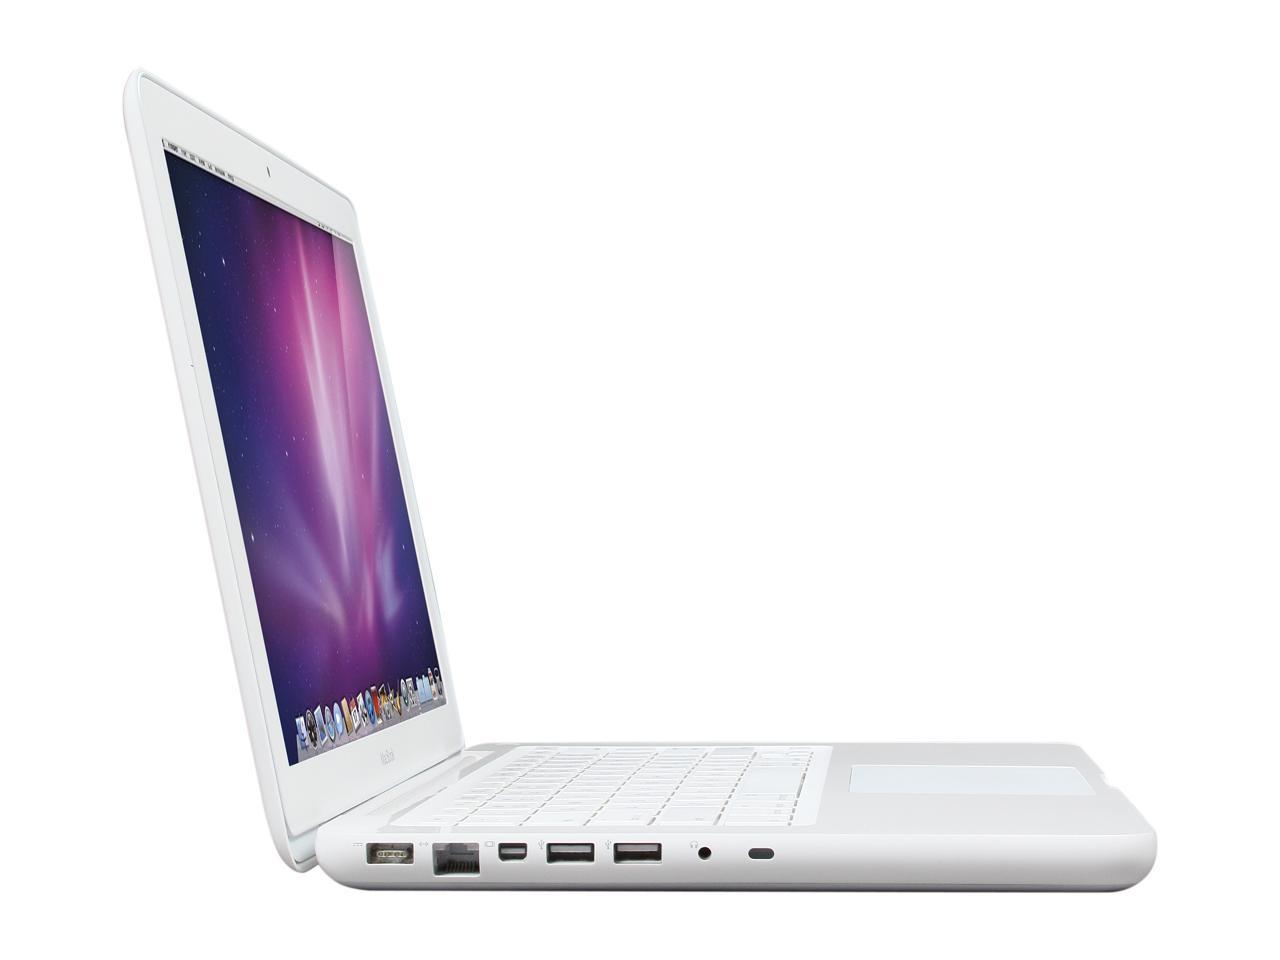 apple-late-2009-13.3-inch-macbook-a1342-white-c2d - 2.26ghz processor, 2gb ram, 940m - 256mb gpu-mc207ll/a-4